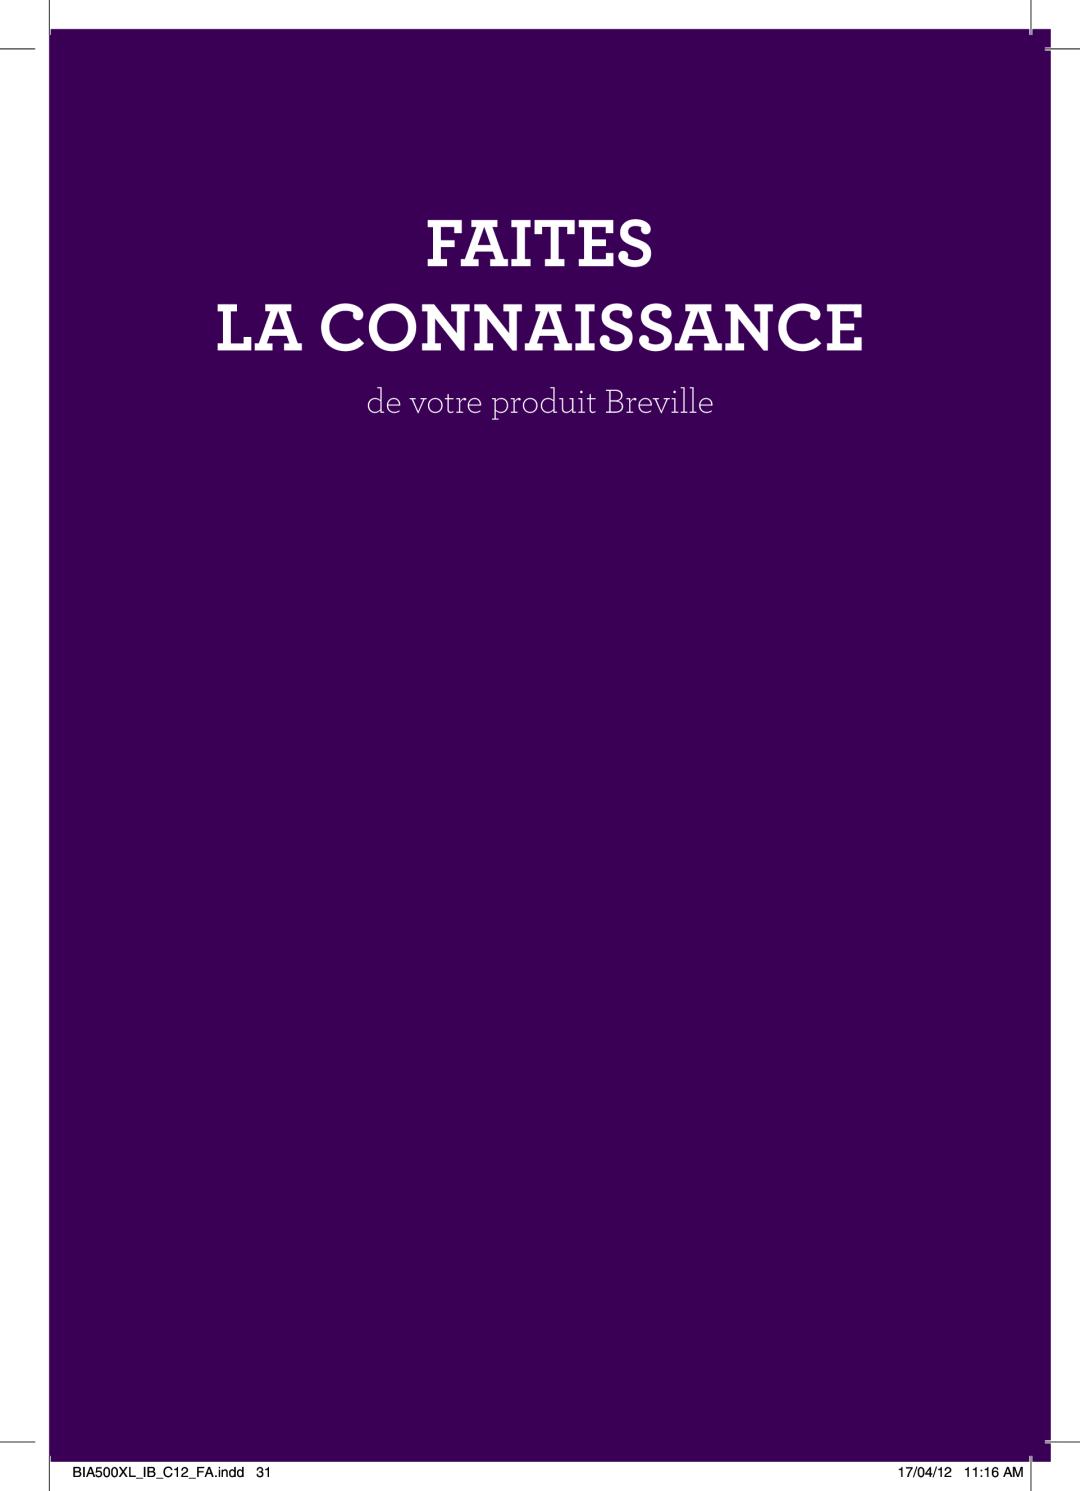 Breville manual Faites La Connaissance, de votre produit Breville, BIA500XLIBC12FA.indd, 17/04/12 1116 AM 